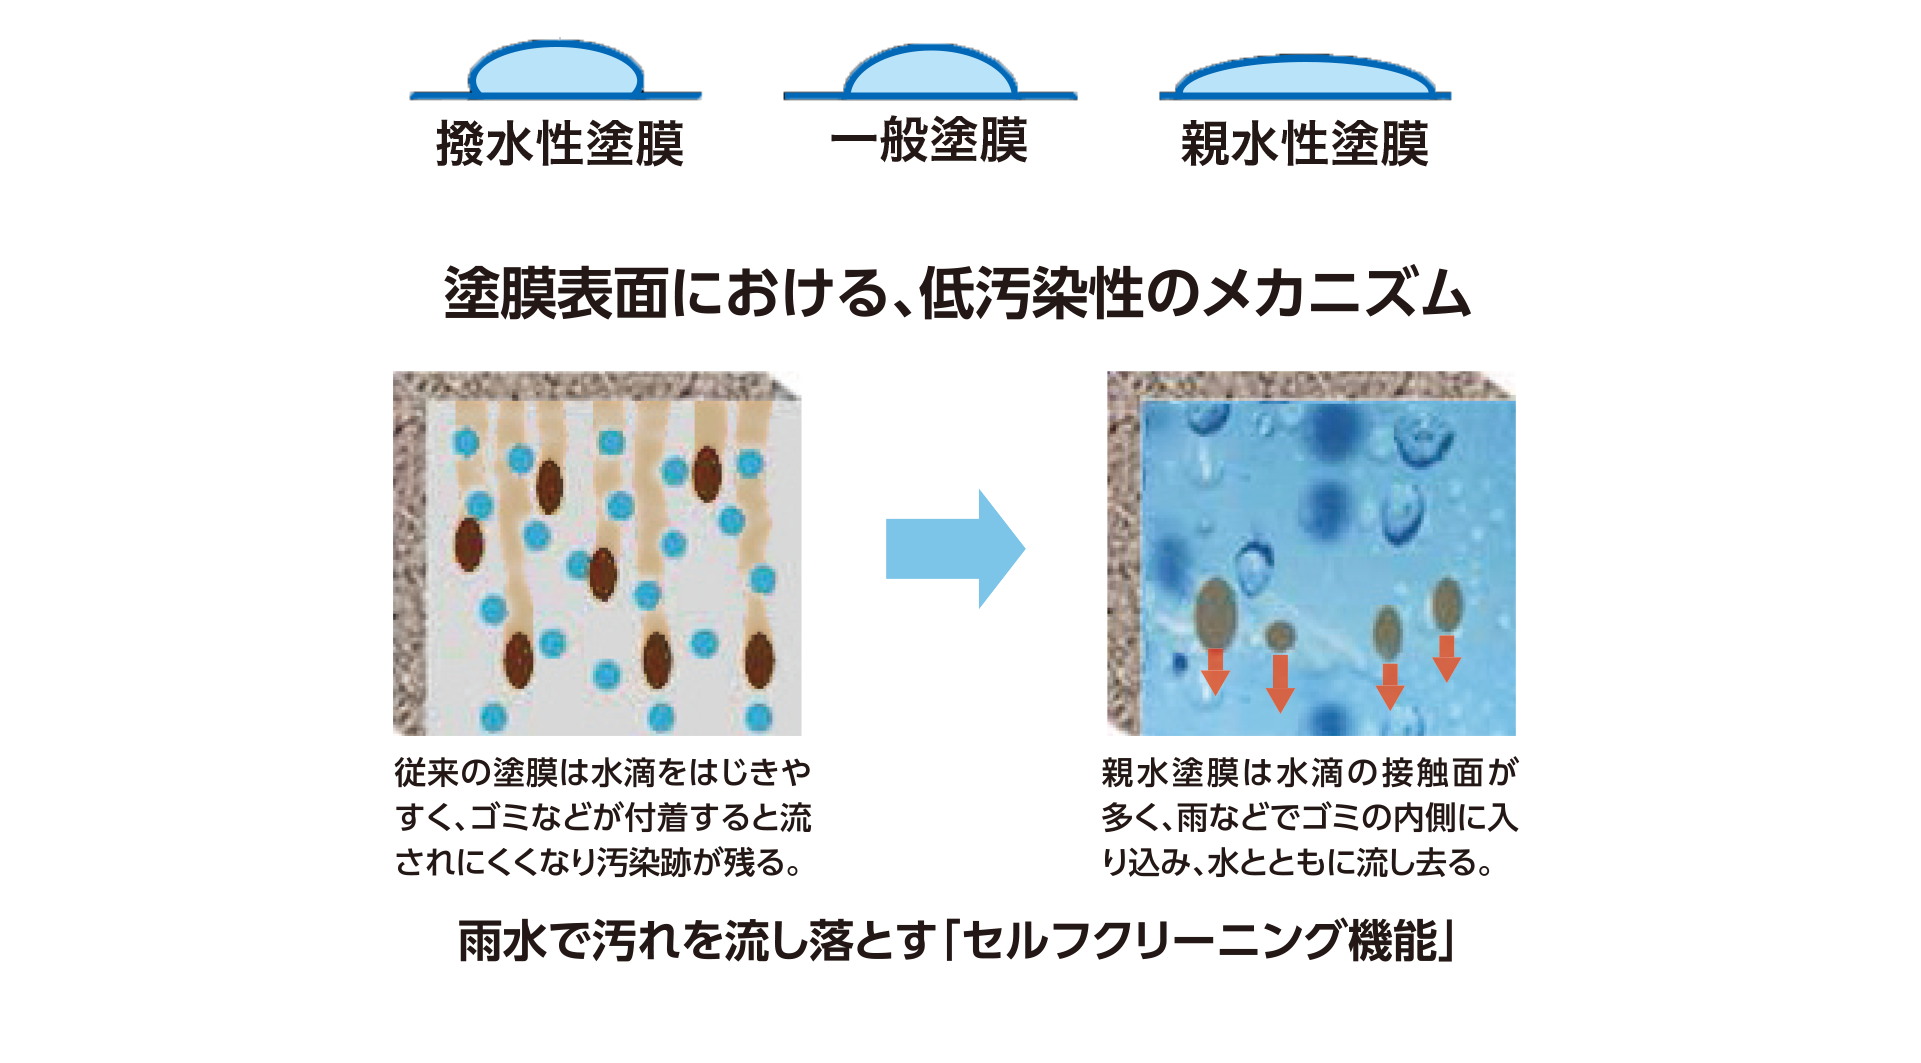 塗膜表面状態の違いによる水の漏れ性